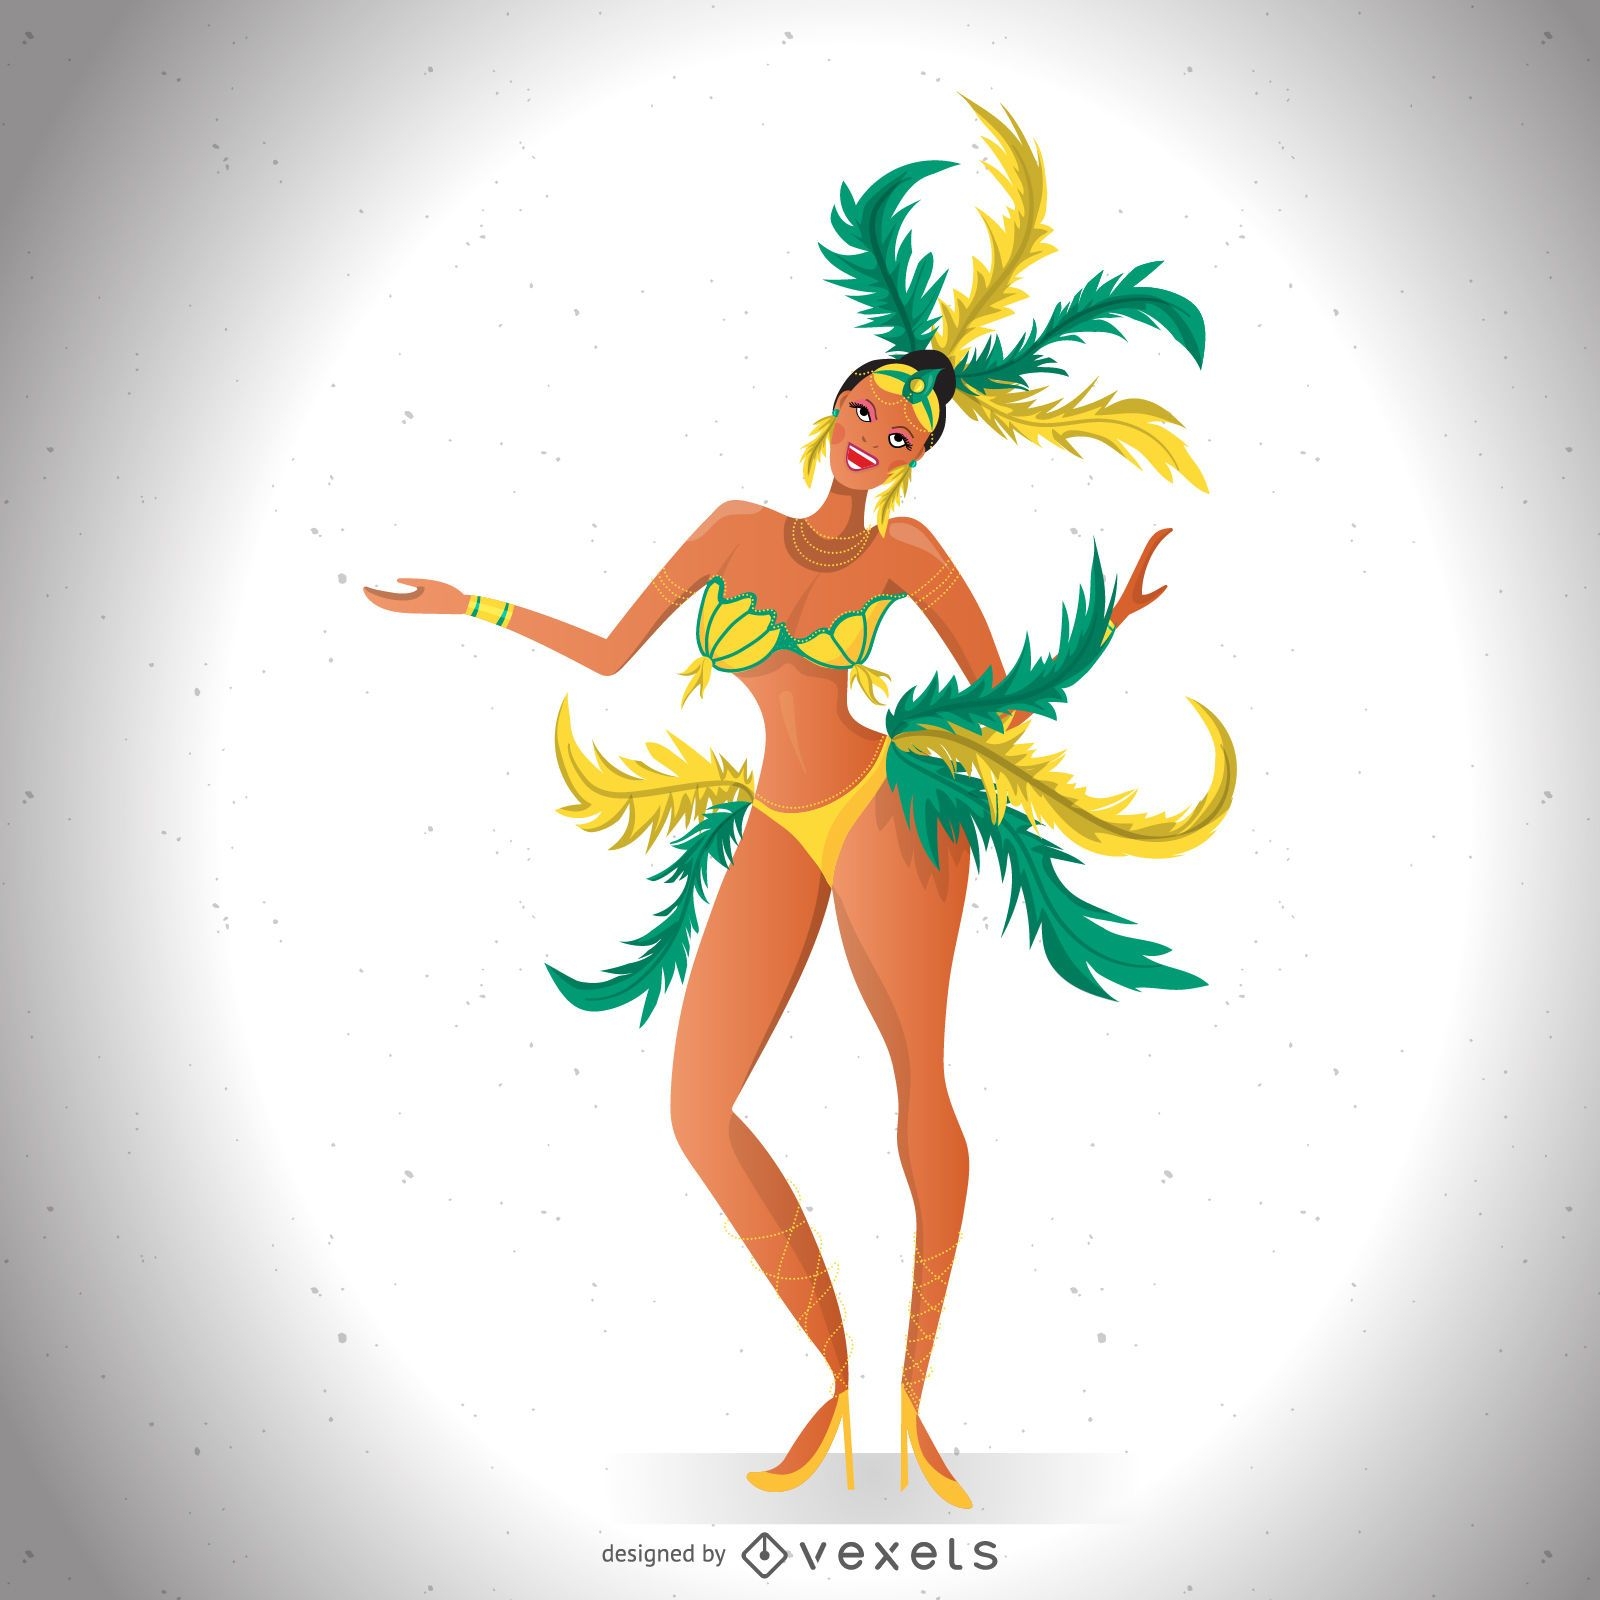 Brasilianische Karnevalst?nzerillustration